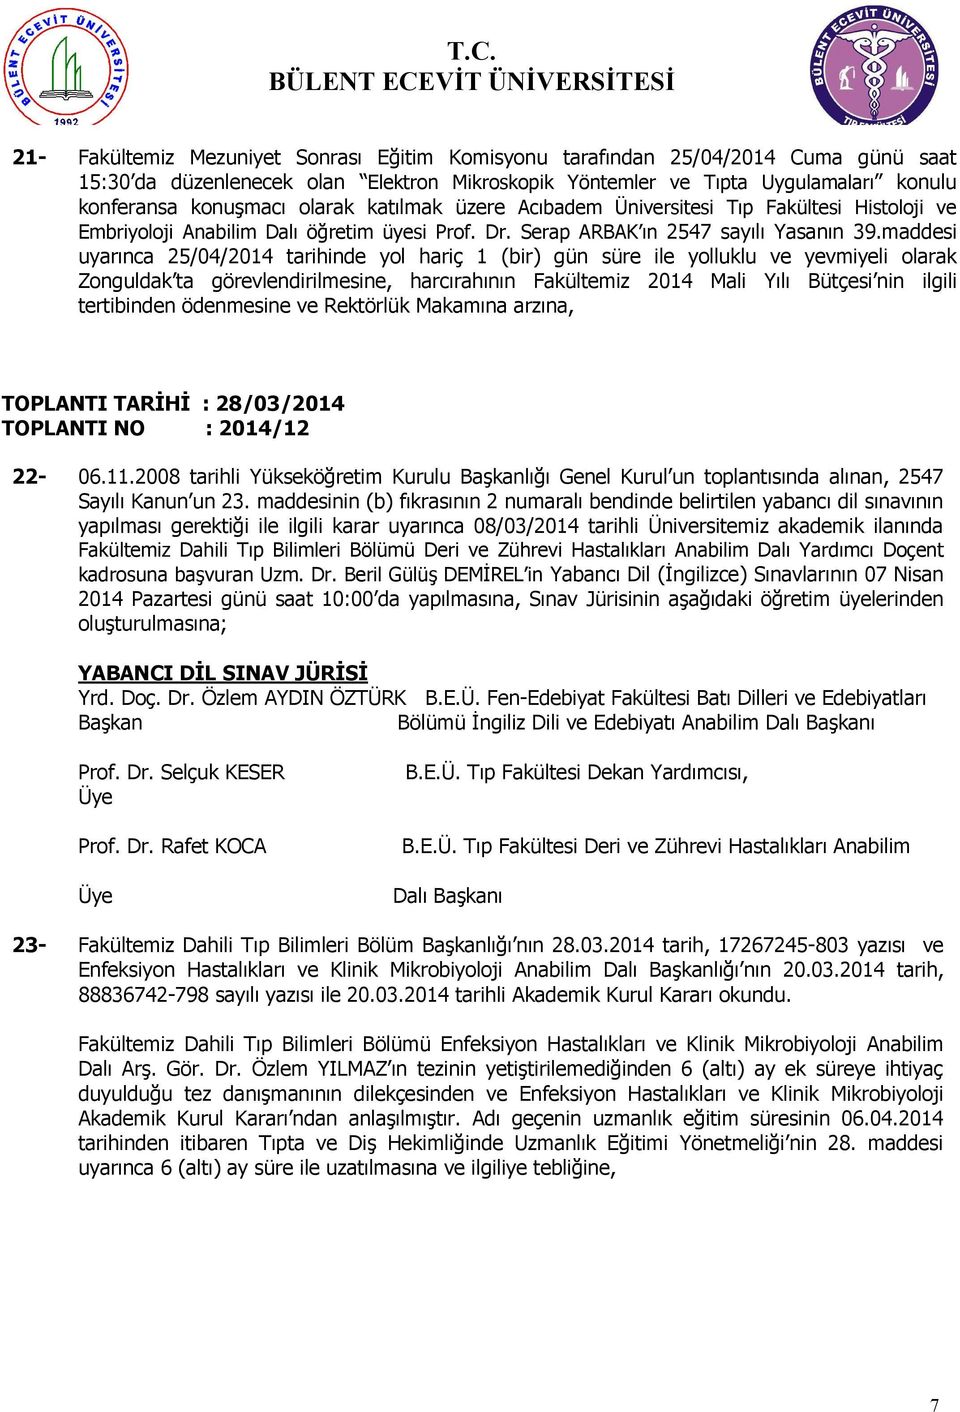 maddesi uyarınca 25/04/2014 tarihinde yol hariç 1 (bir) gün süre ile yolluklu ve yevmiyeli olarak Zonguldak ta görevlendirilmesine, harcırahının Fakültemiz 2014 Mali Yılı Bütçesi nin ilgili